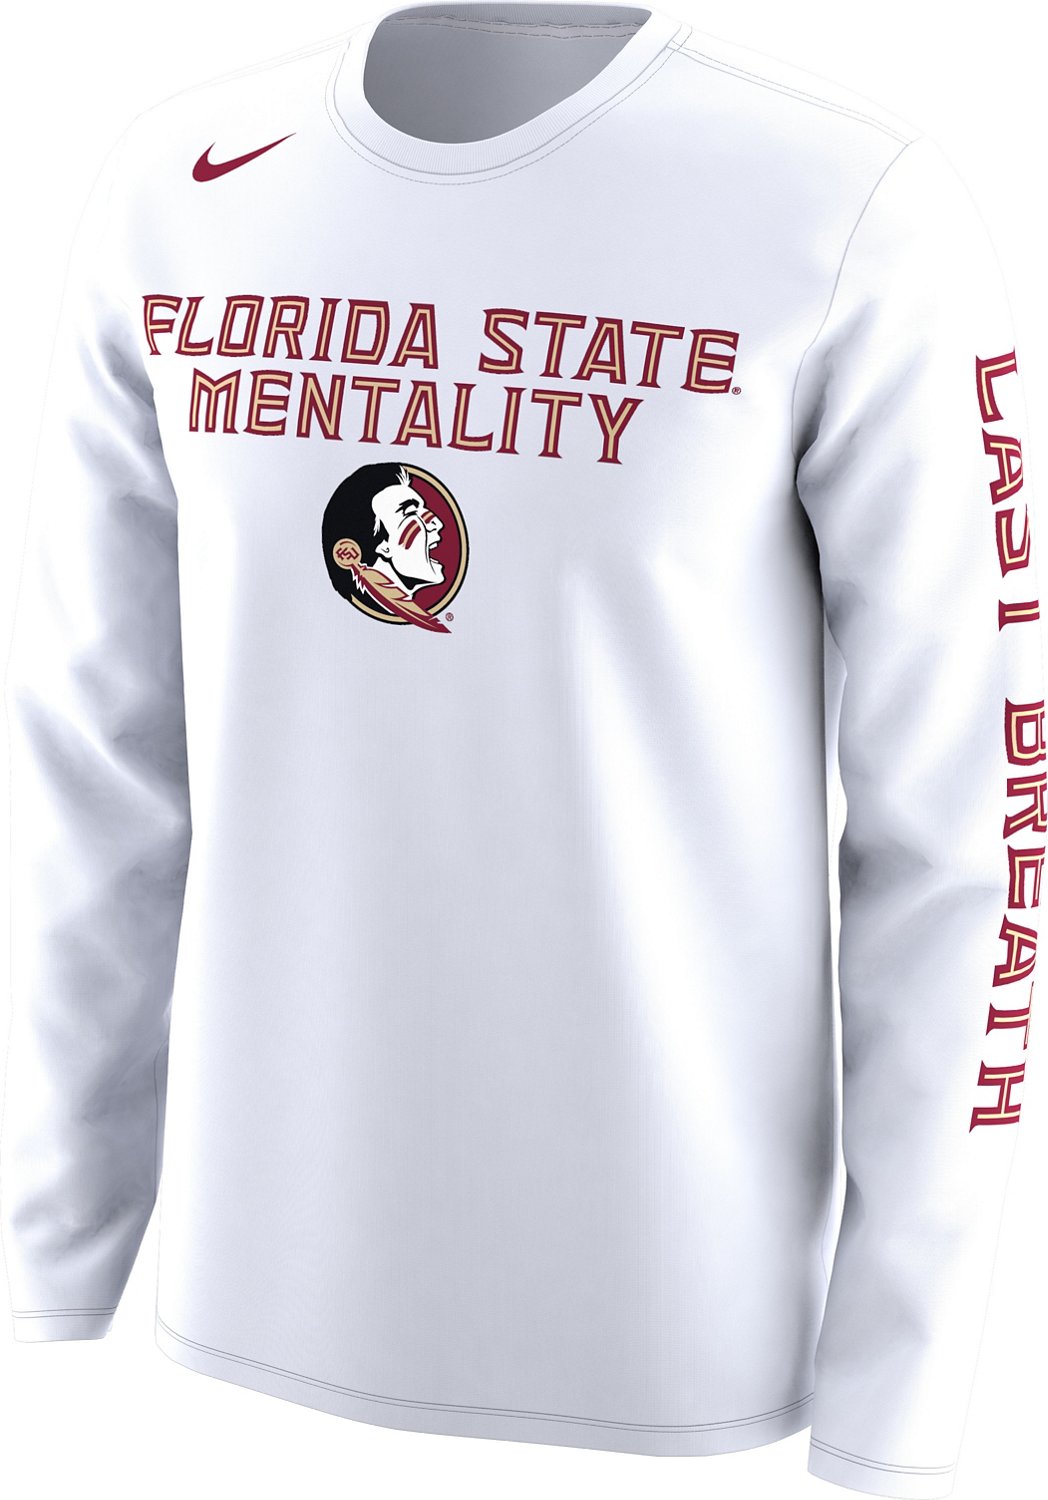 florida state university jersey